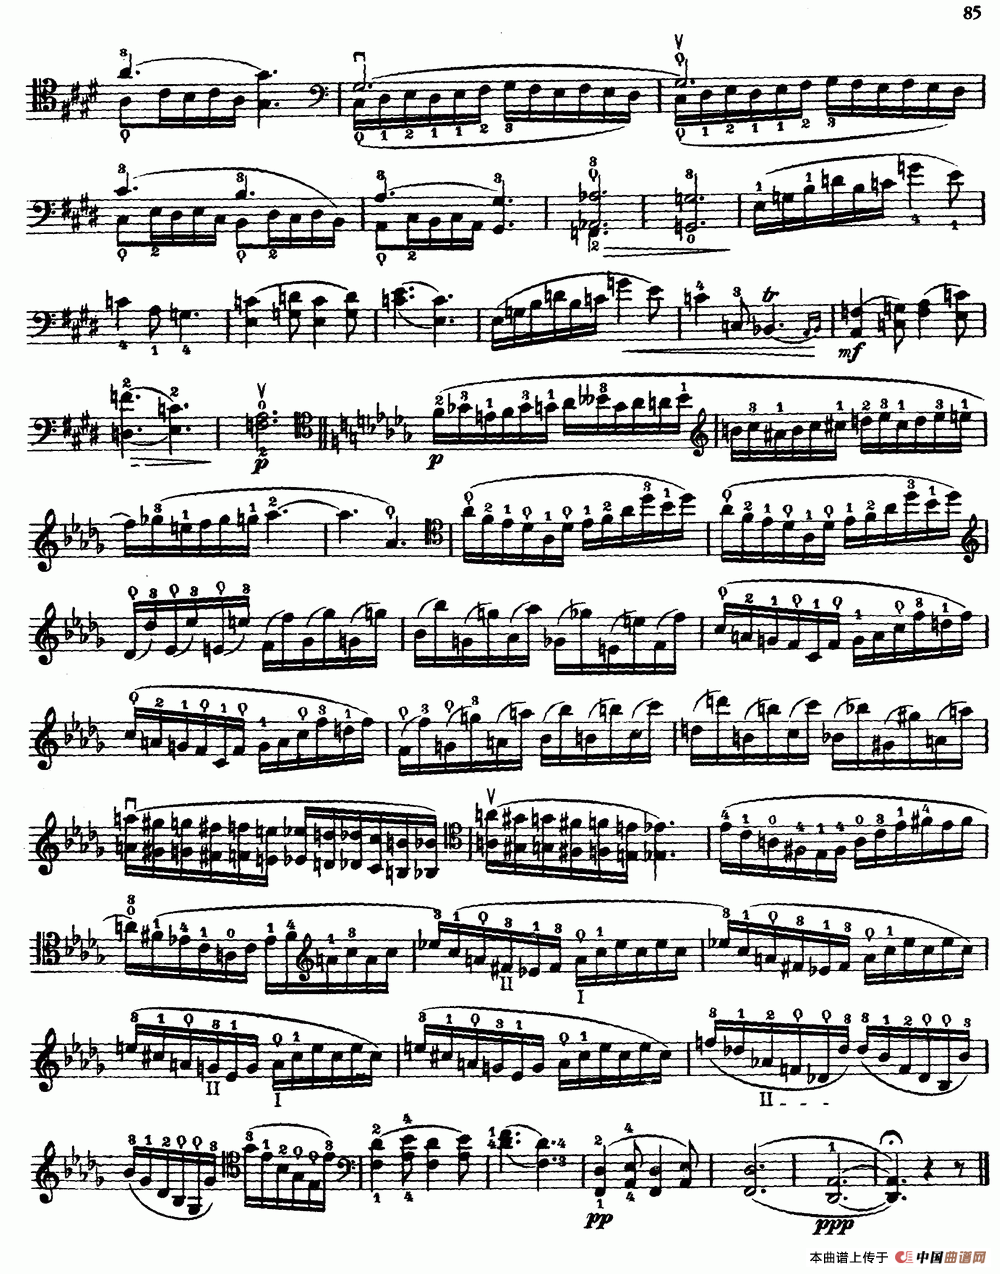 大提琴高级练习曲40首 No.39小提琴谱